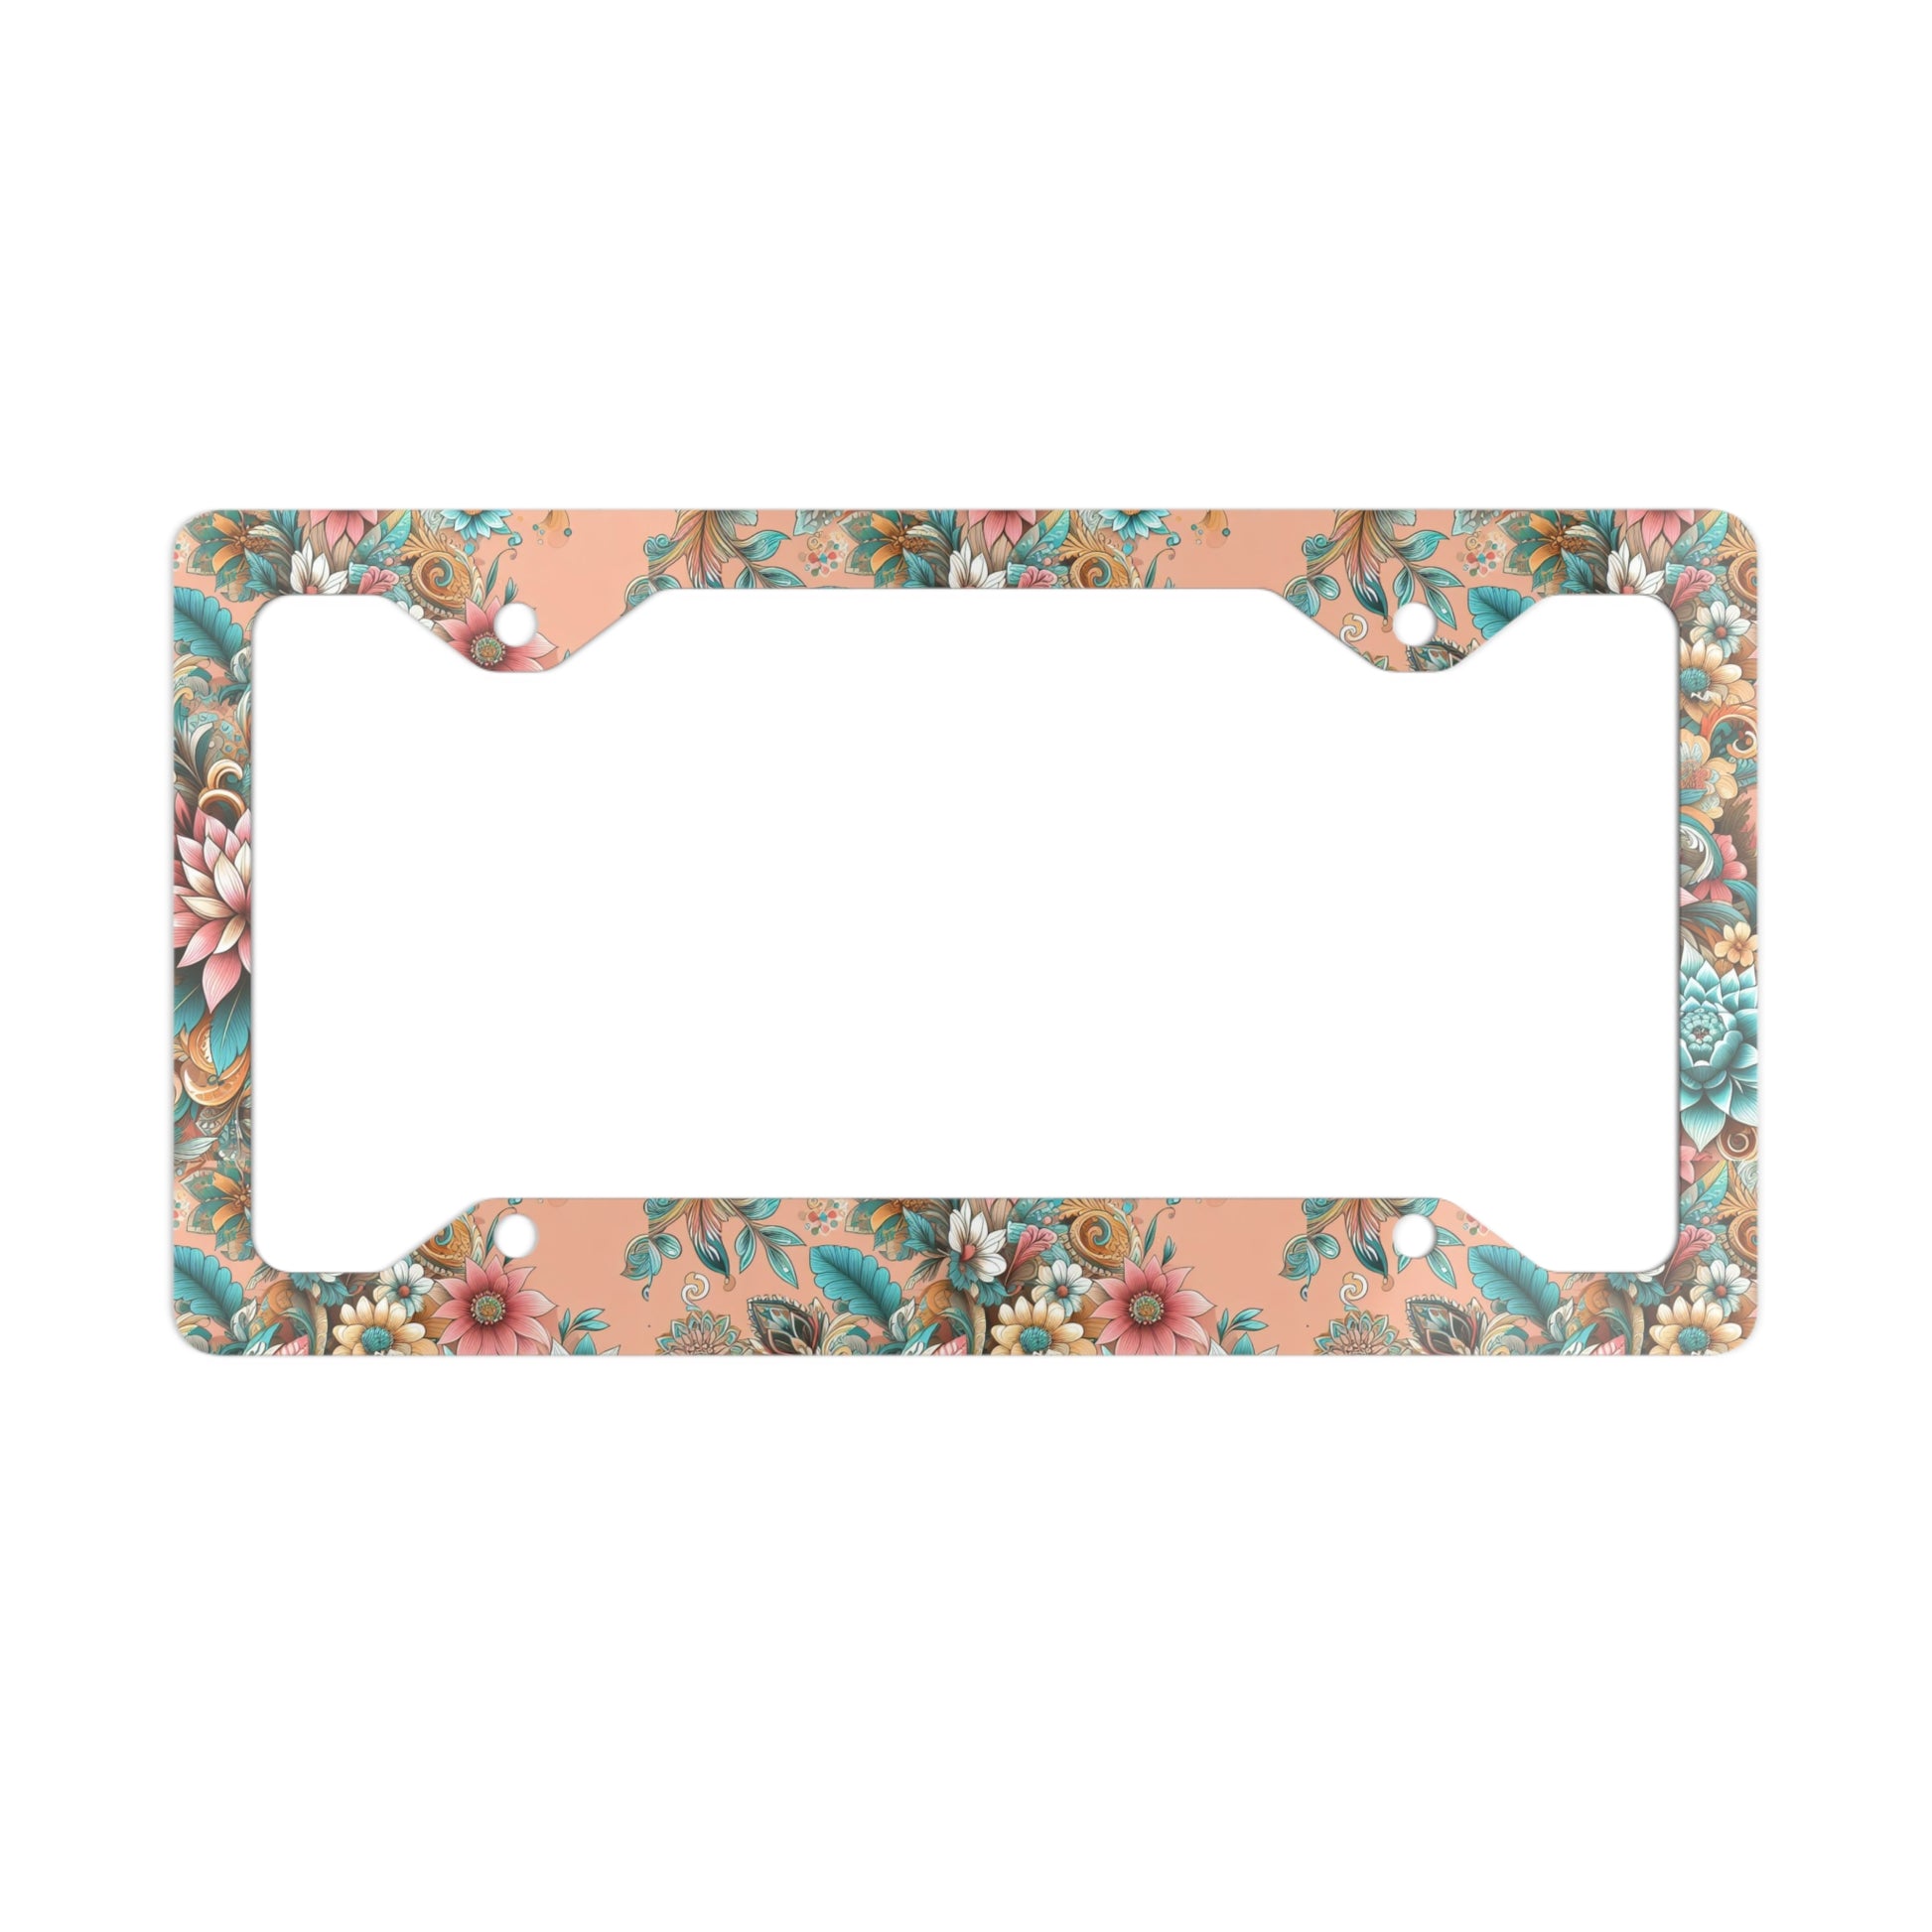 Vey summer Floral Metal License Plate Frame